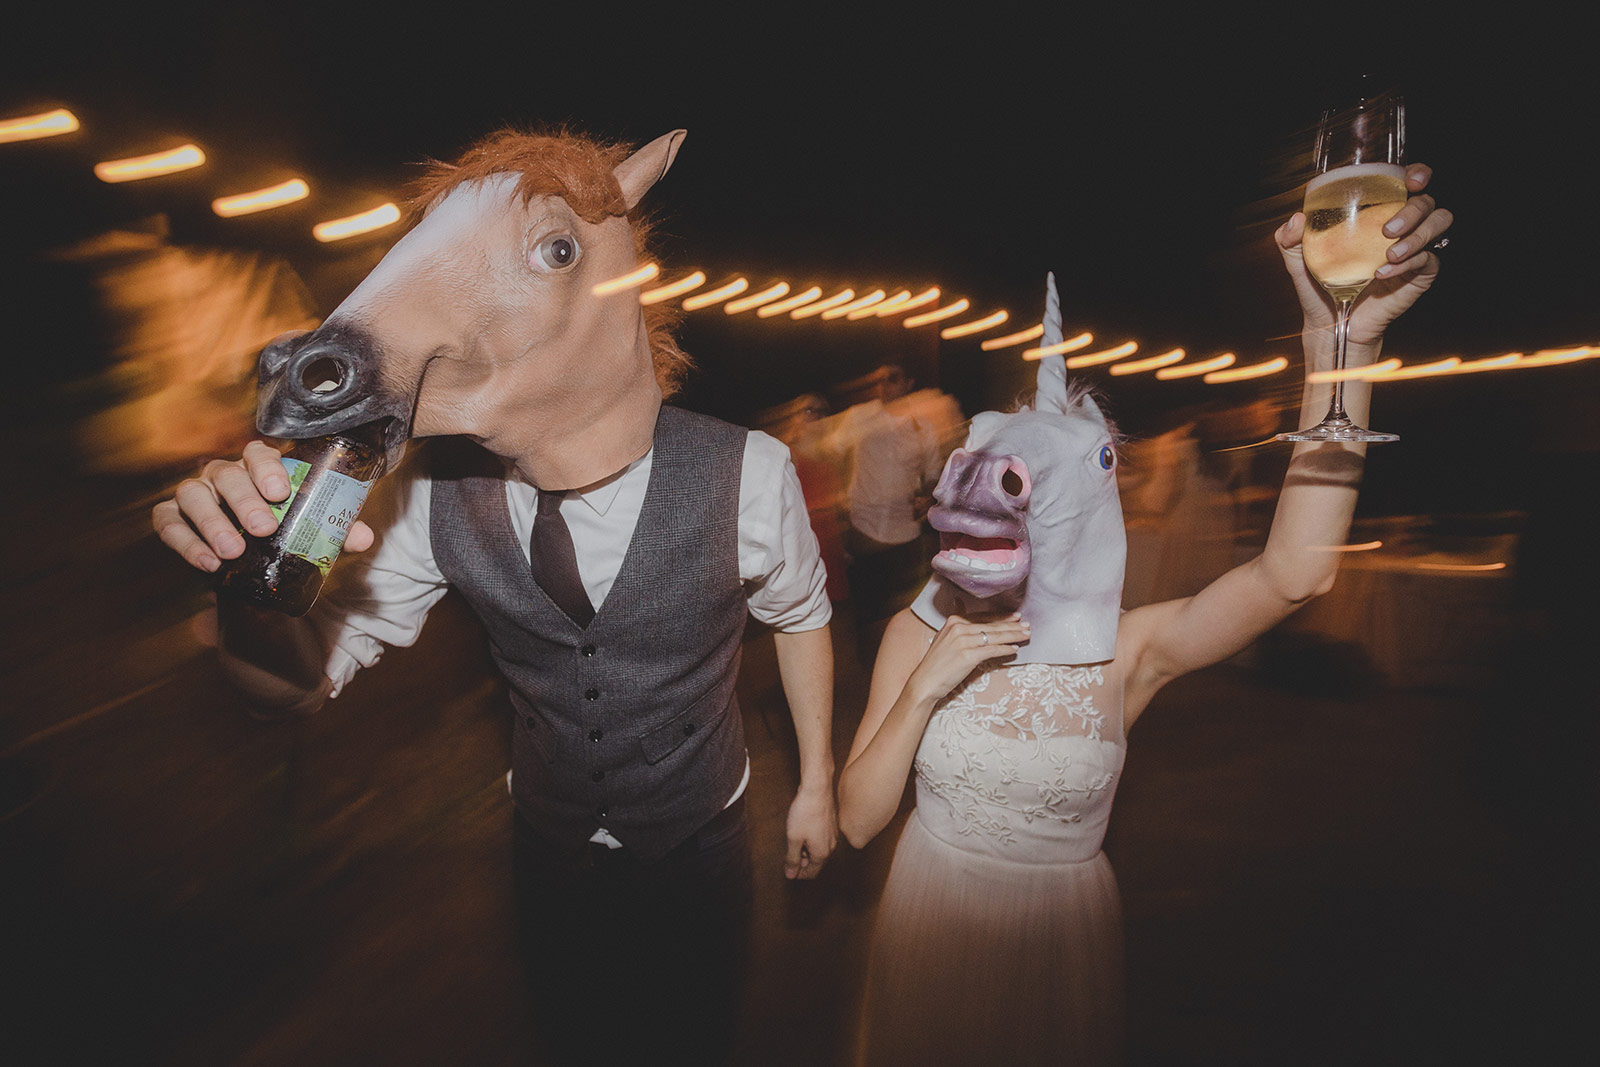 A man and woman wearing horse masks at night.